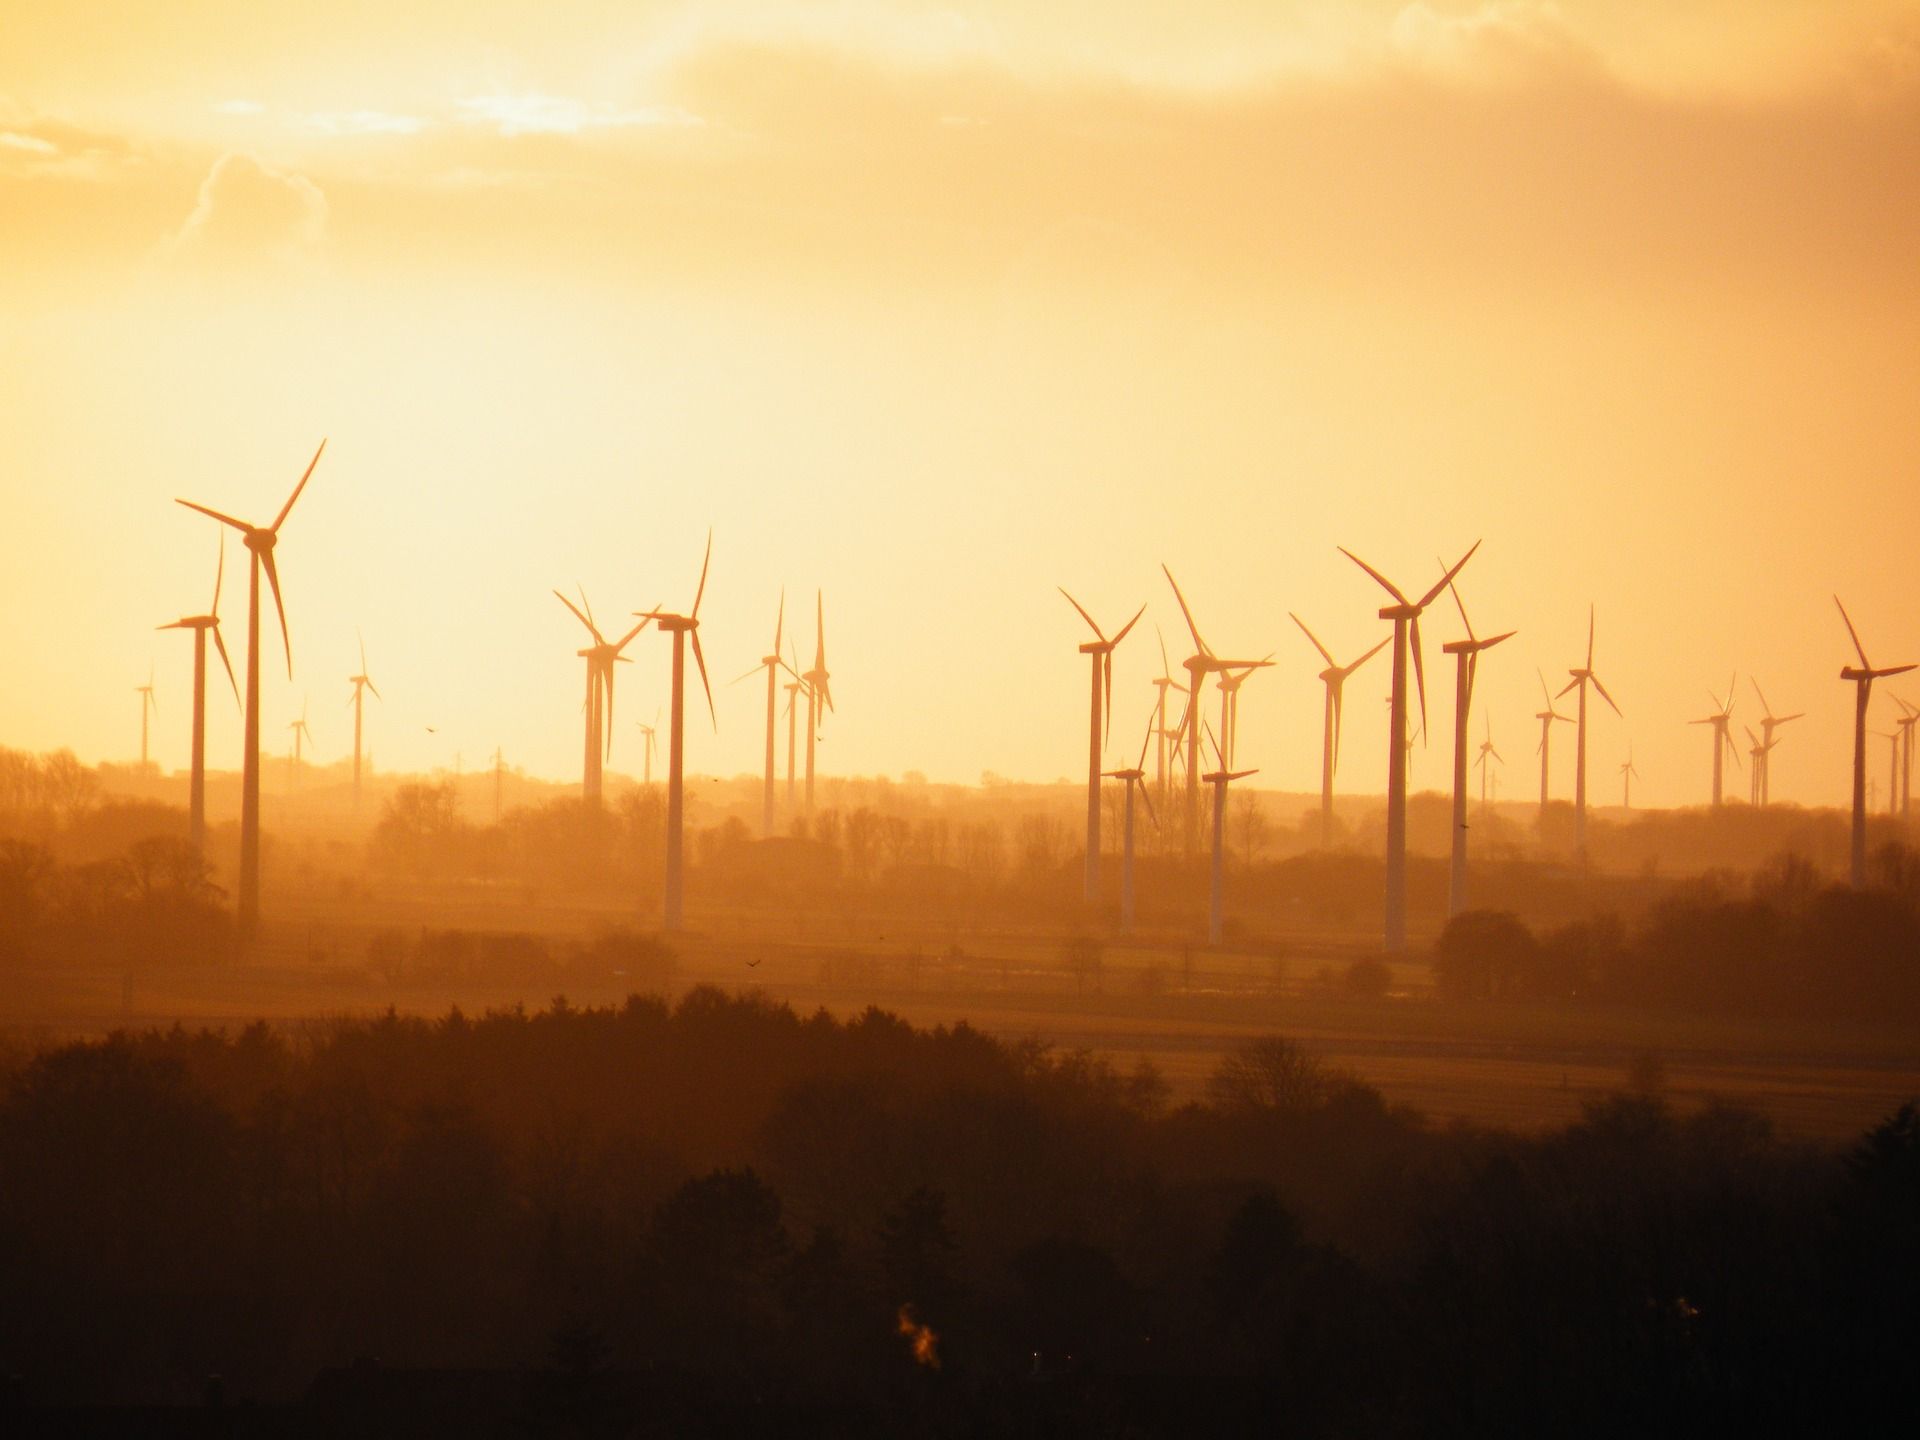 El parque eólico como modelos de línea de alta tensión se construyen sobre zonas de alto valor ecológico / Foto: Thorsten Dahl - Pixabay